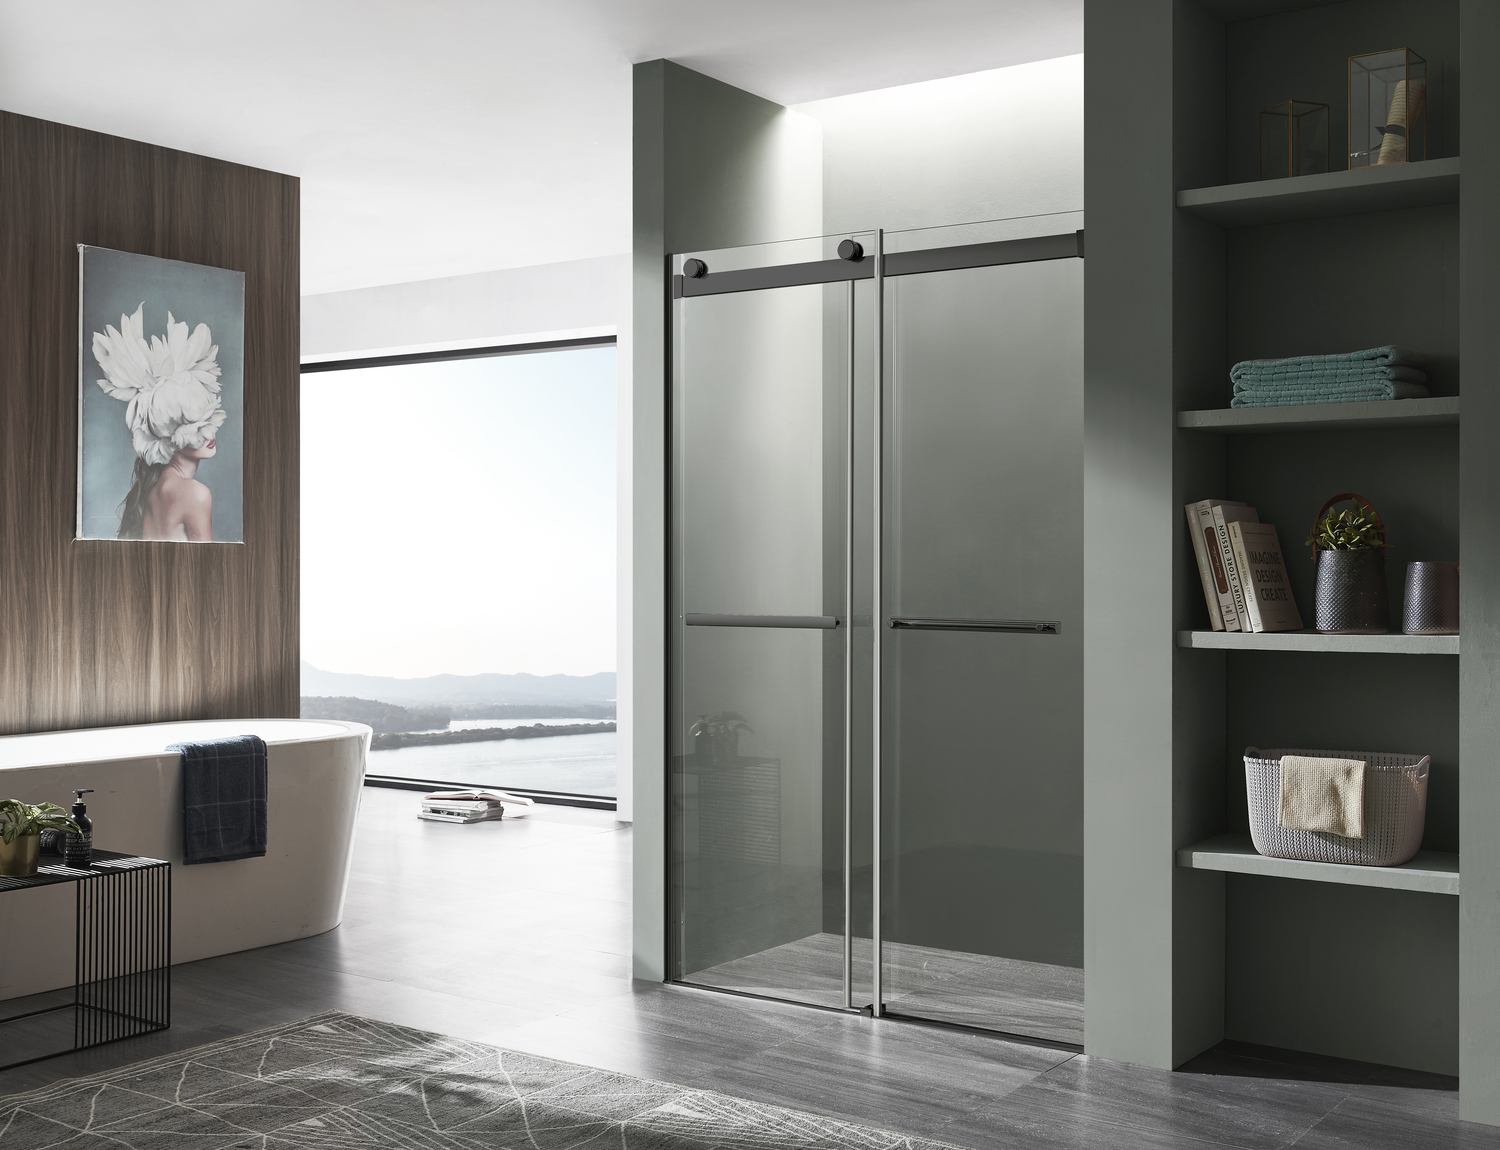 glass shower doors for tub surround Anzzi SHOWER - Shower Doors - Sliding Black